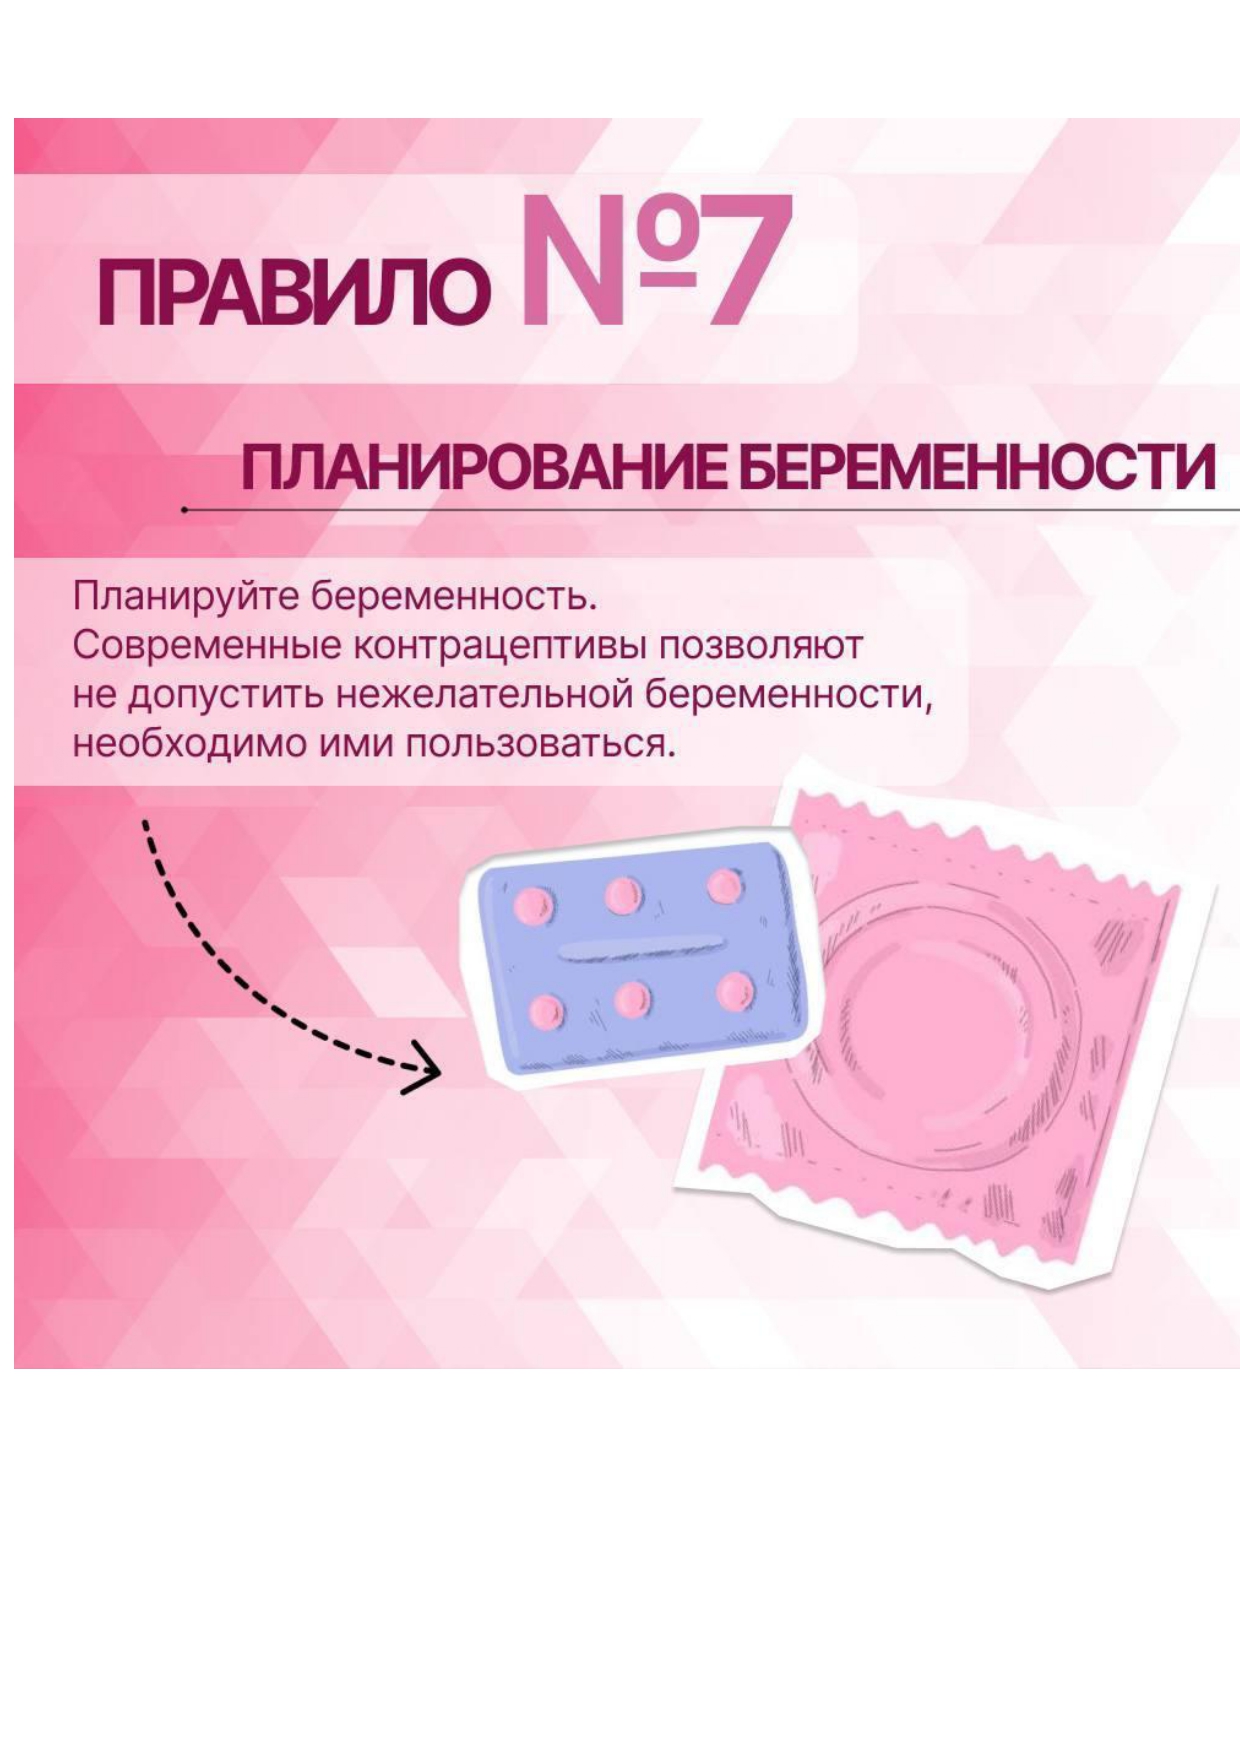 сохранение репродуктивного здоровья pages to jpg 0010